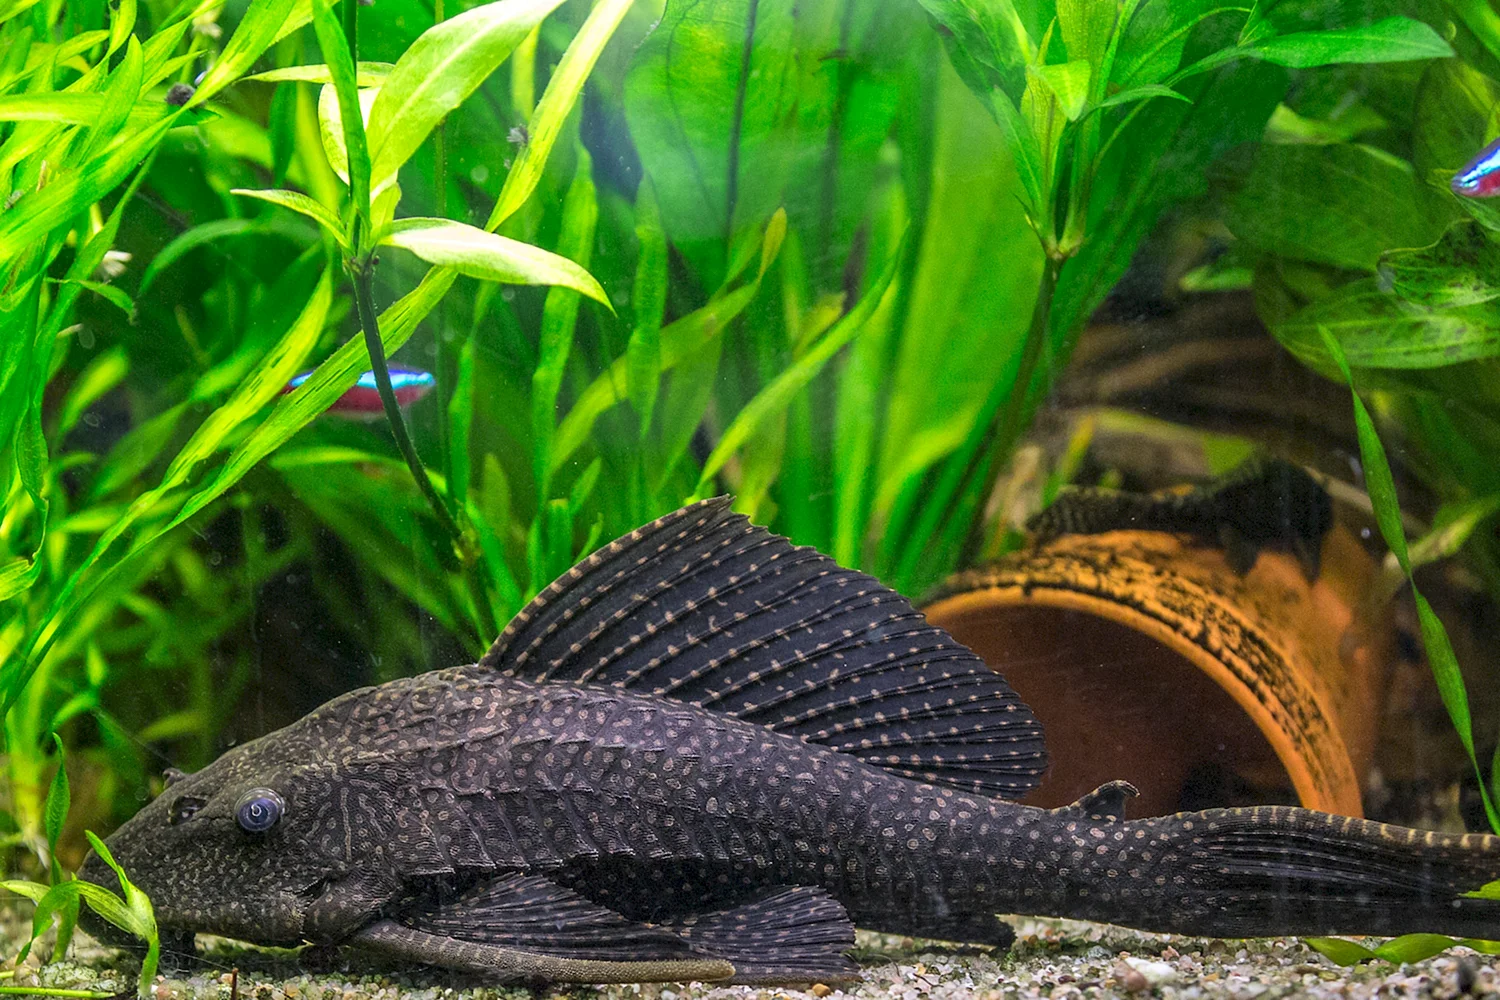 Плекостомус рыбка аквариумная